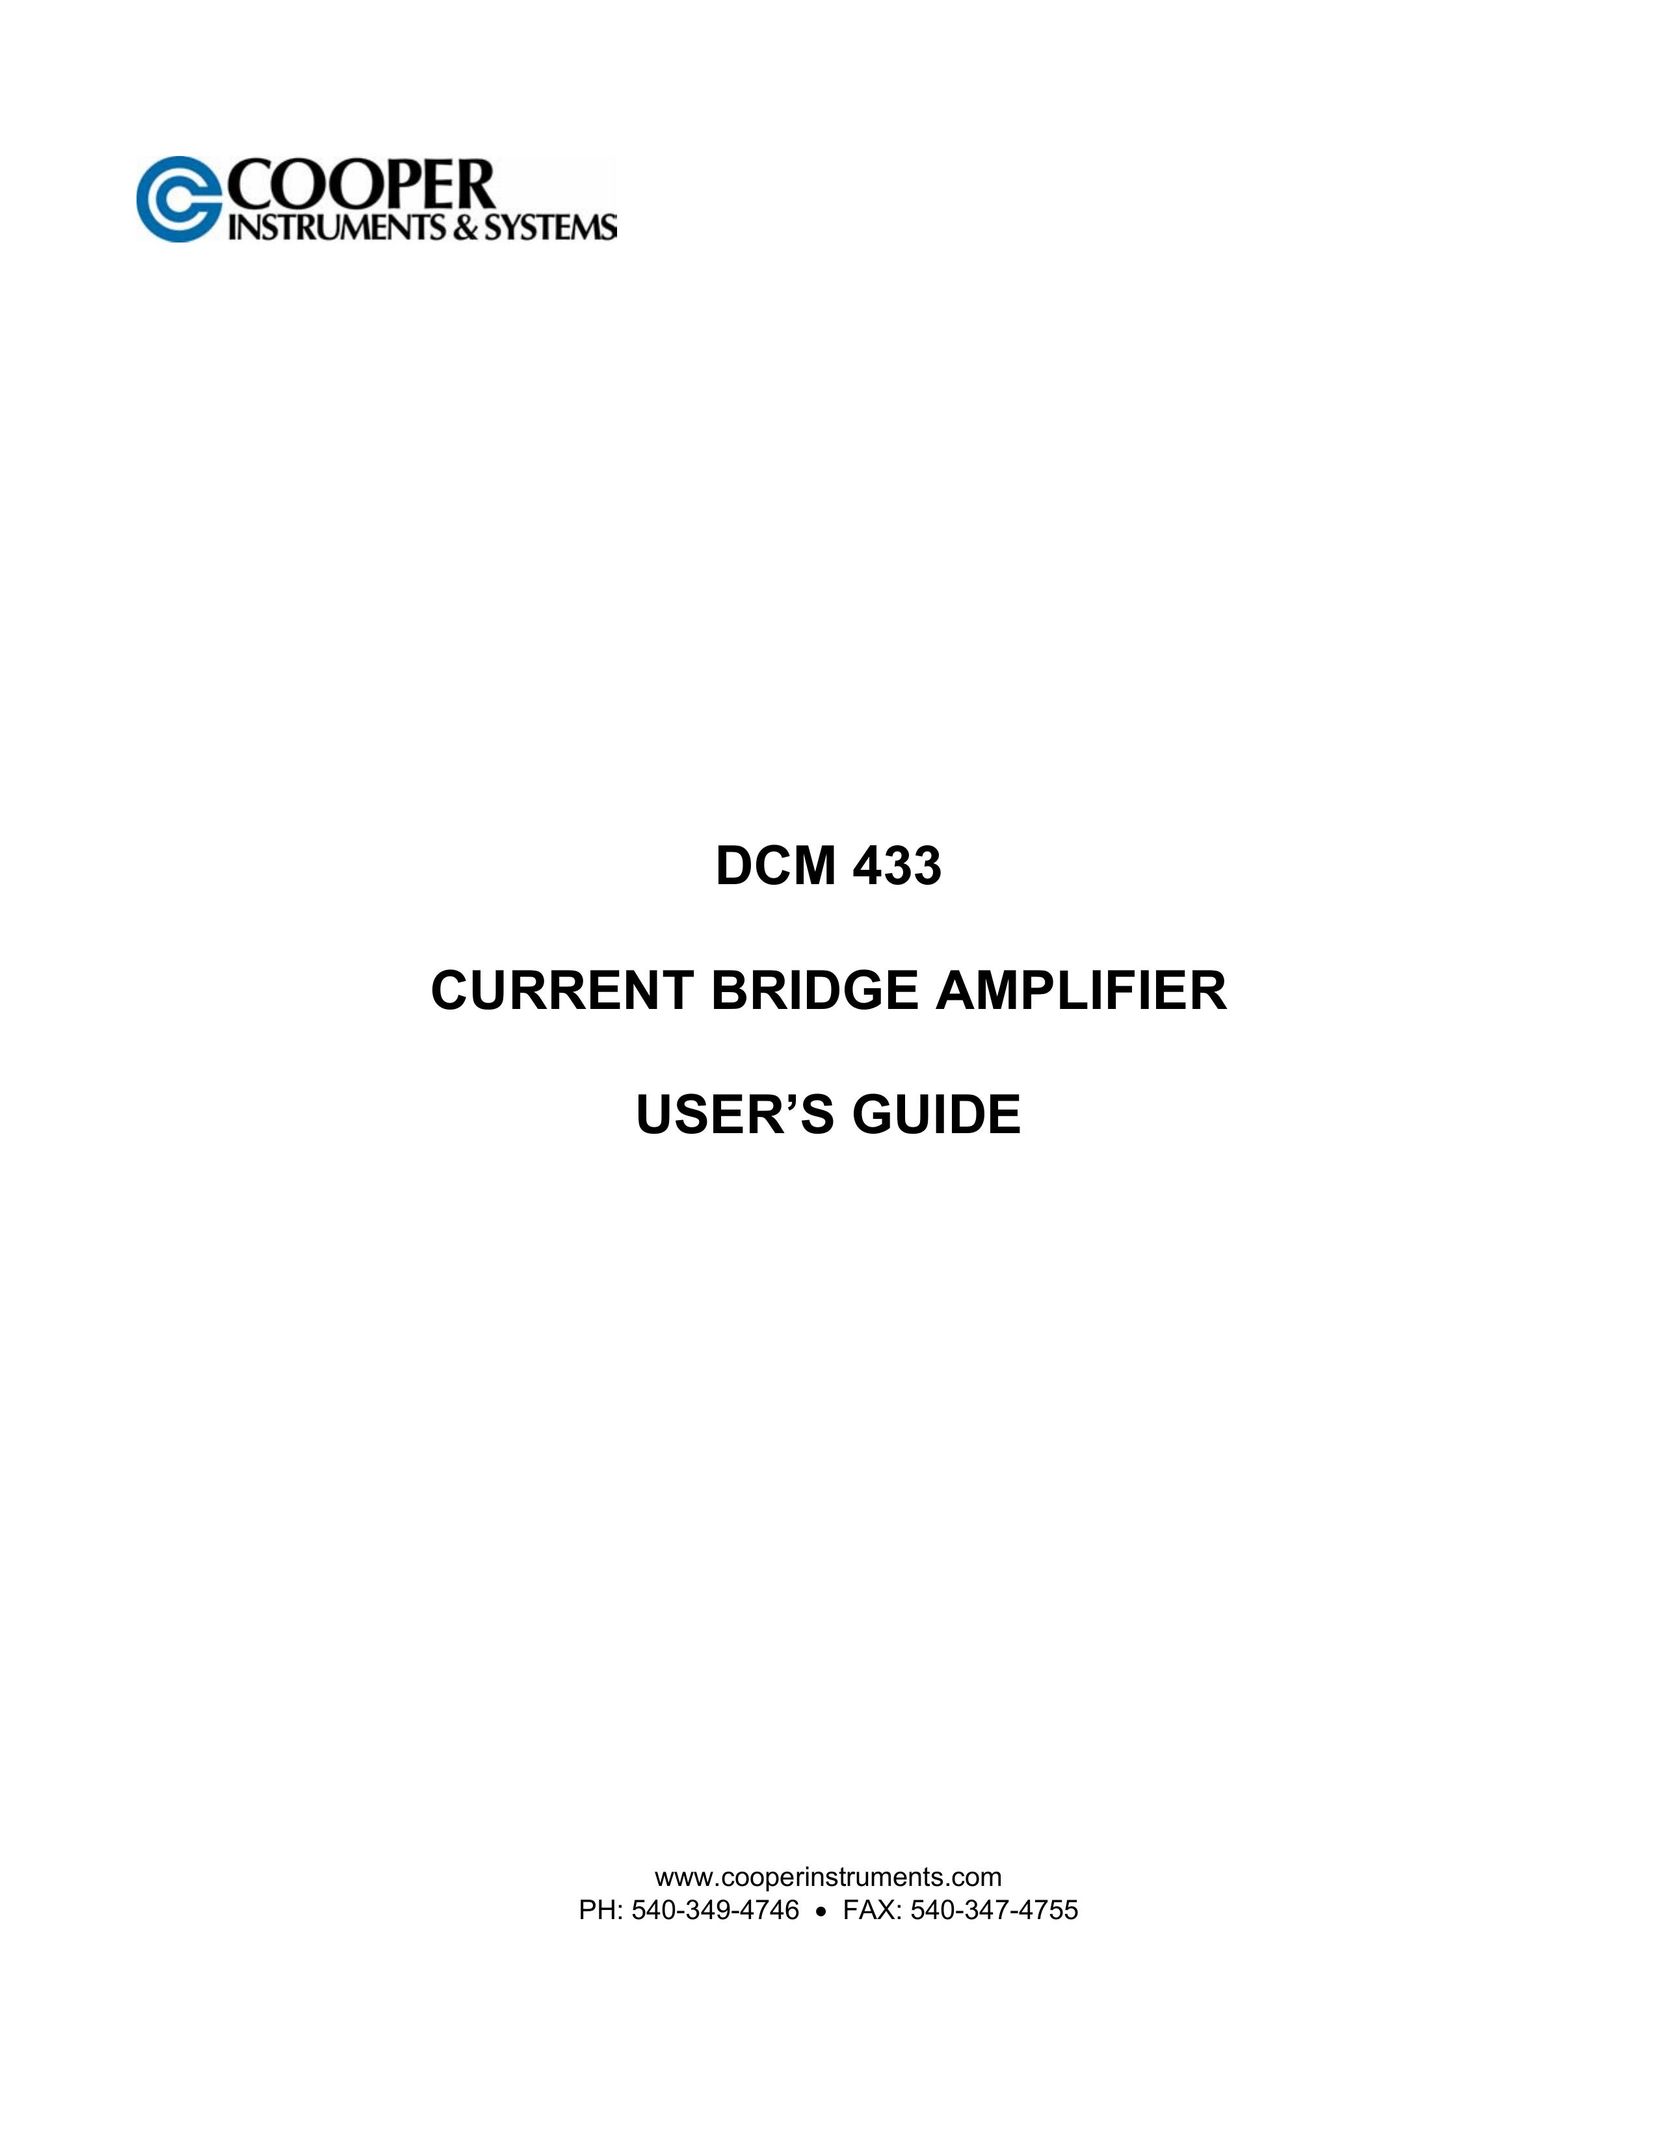 Cooper Bussmann DCM 433 Stereo Amplifier User Manual